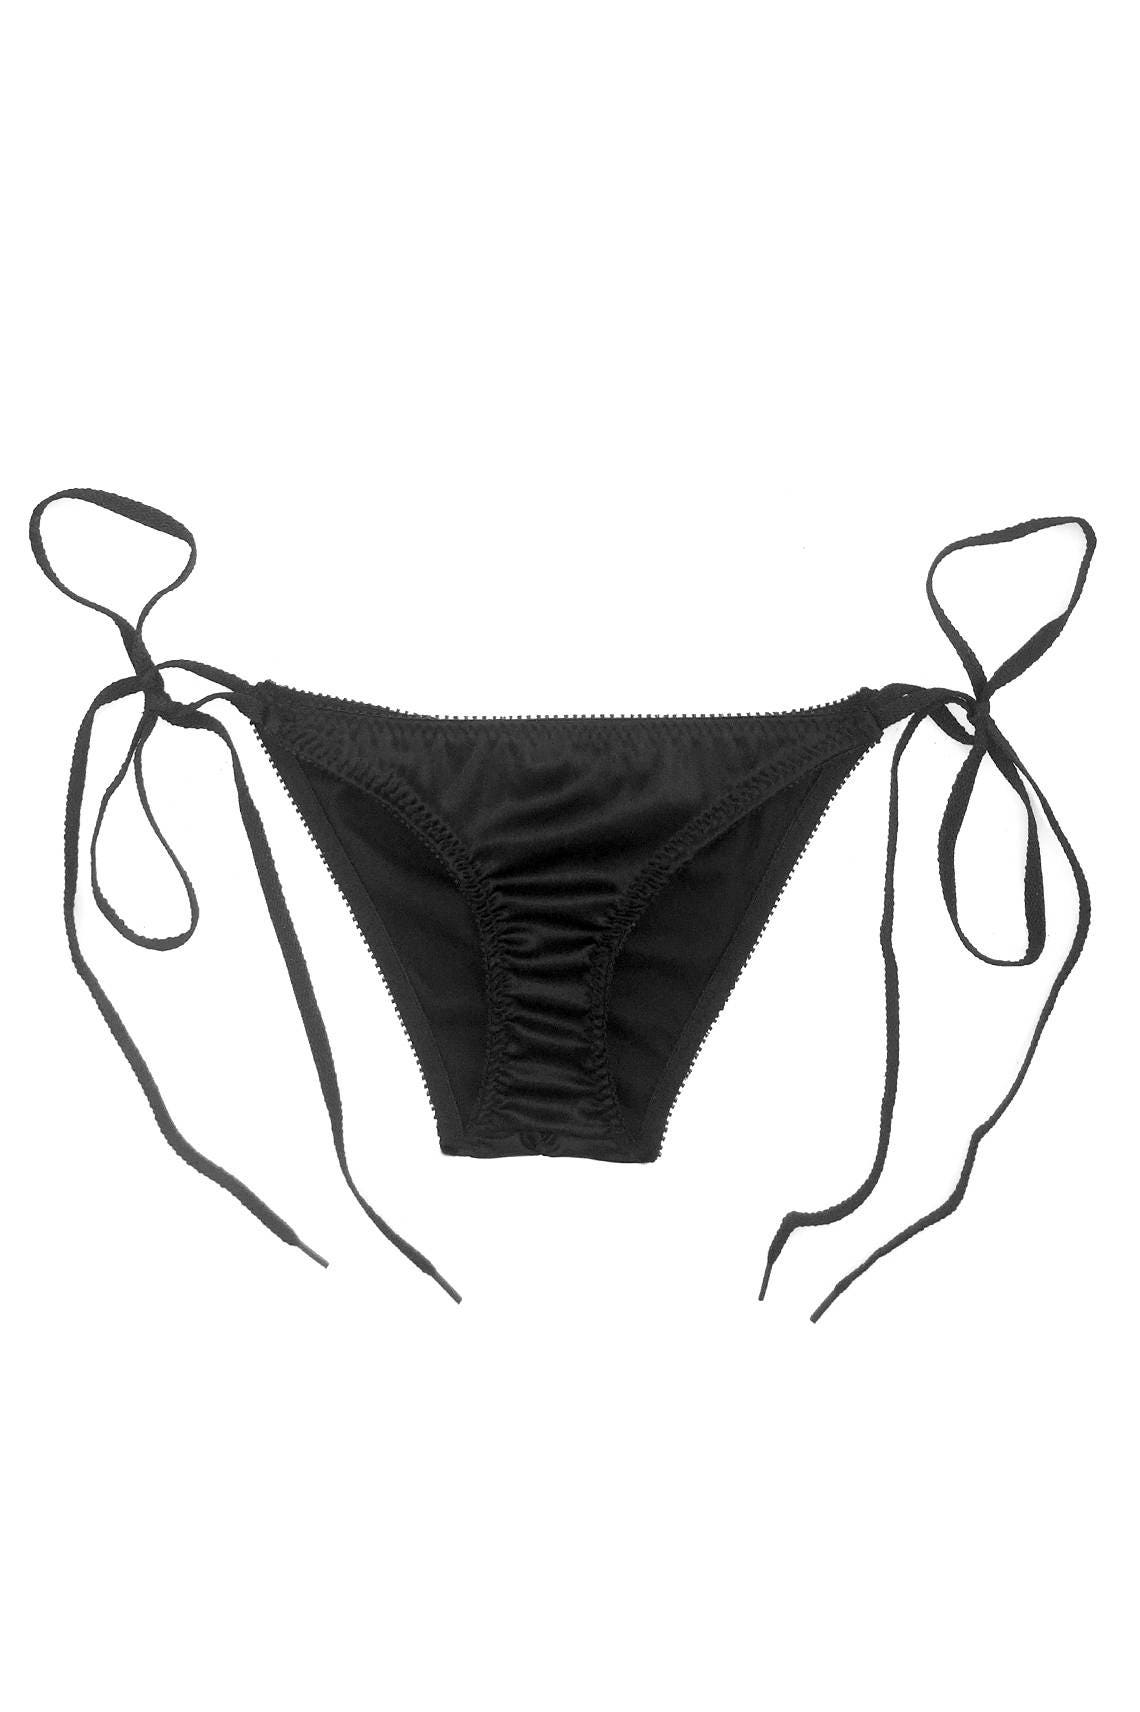 Cardamine Side Tie Panty in Black Silk Charmeuse | Etsy